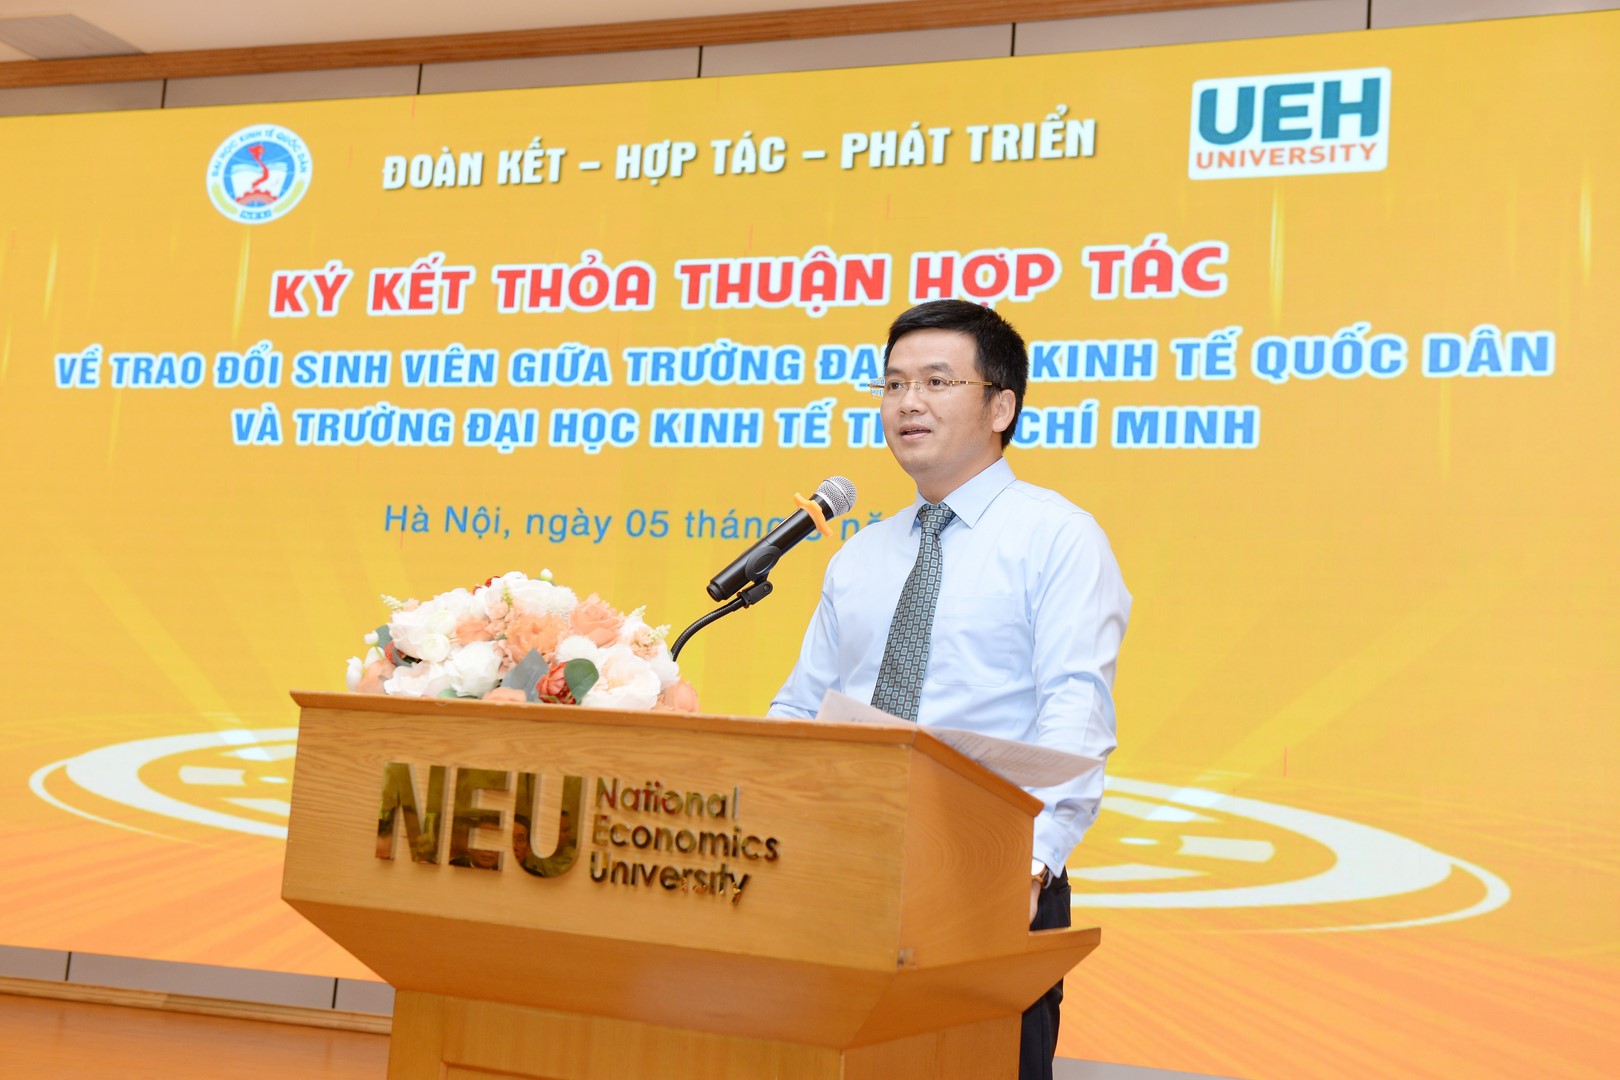 ThS. Nguyễn Hoàng Hà - Trưởng phòng CTCT&QLSV dẫn chương trình tại buổi Lễ